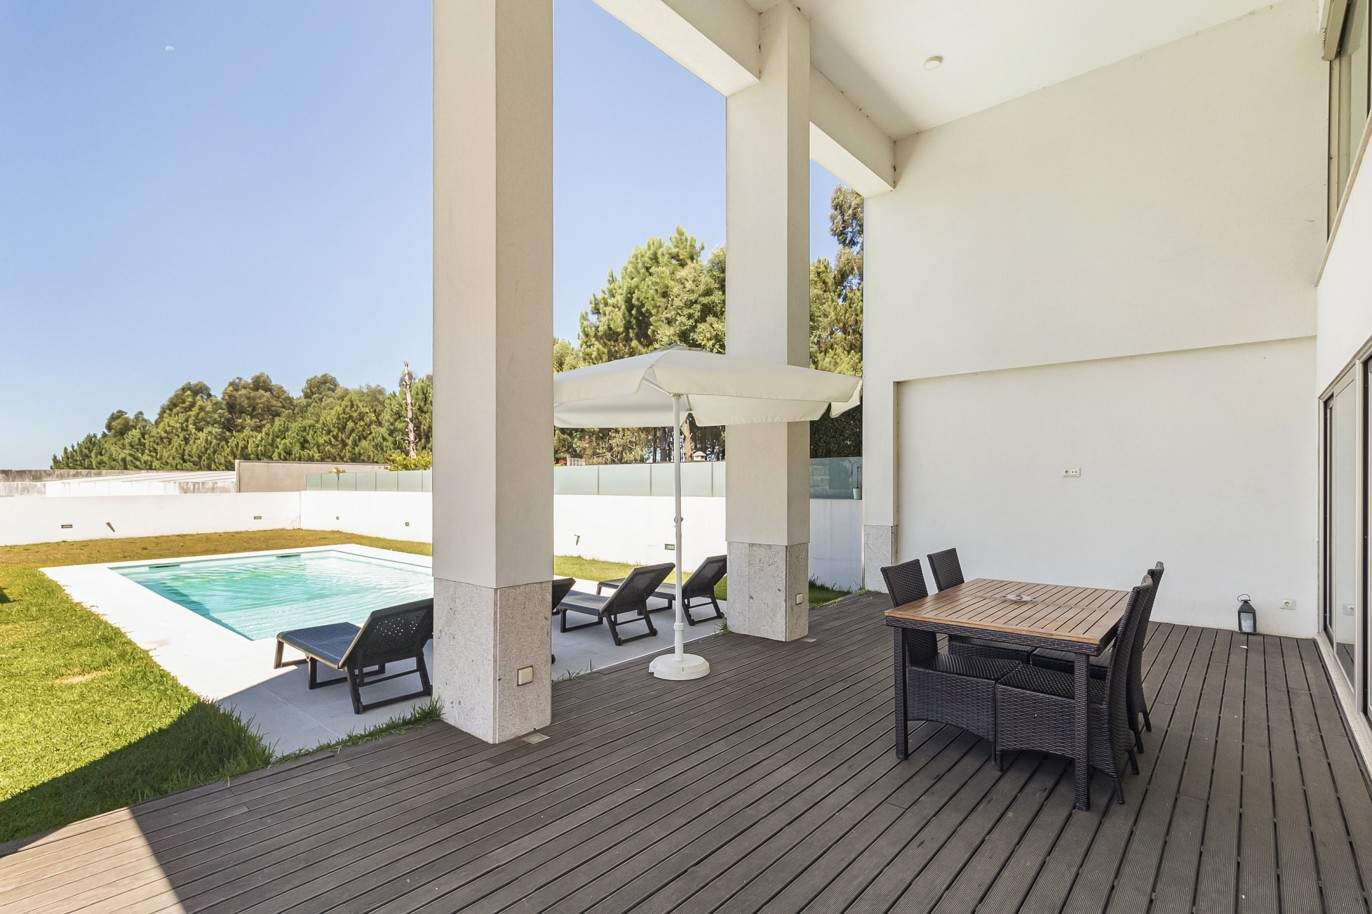 Verkauf: Villa mit 3 Schlafzimmern und Schwimmbad, in der Nähe des Strandes, Madalena, V. N. Gaia, Porto, Portugal_208548